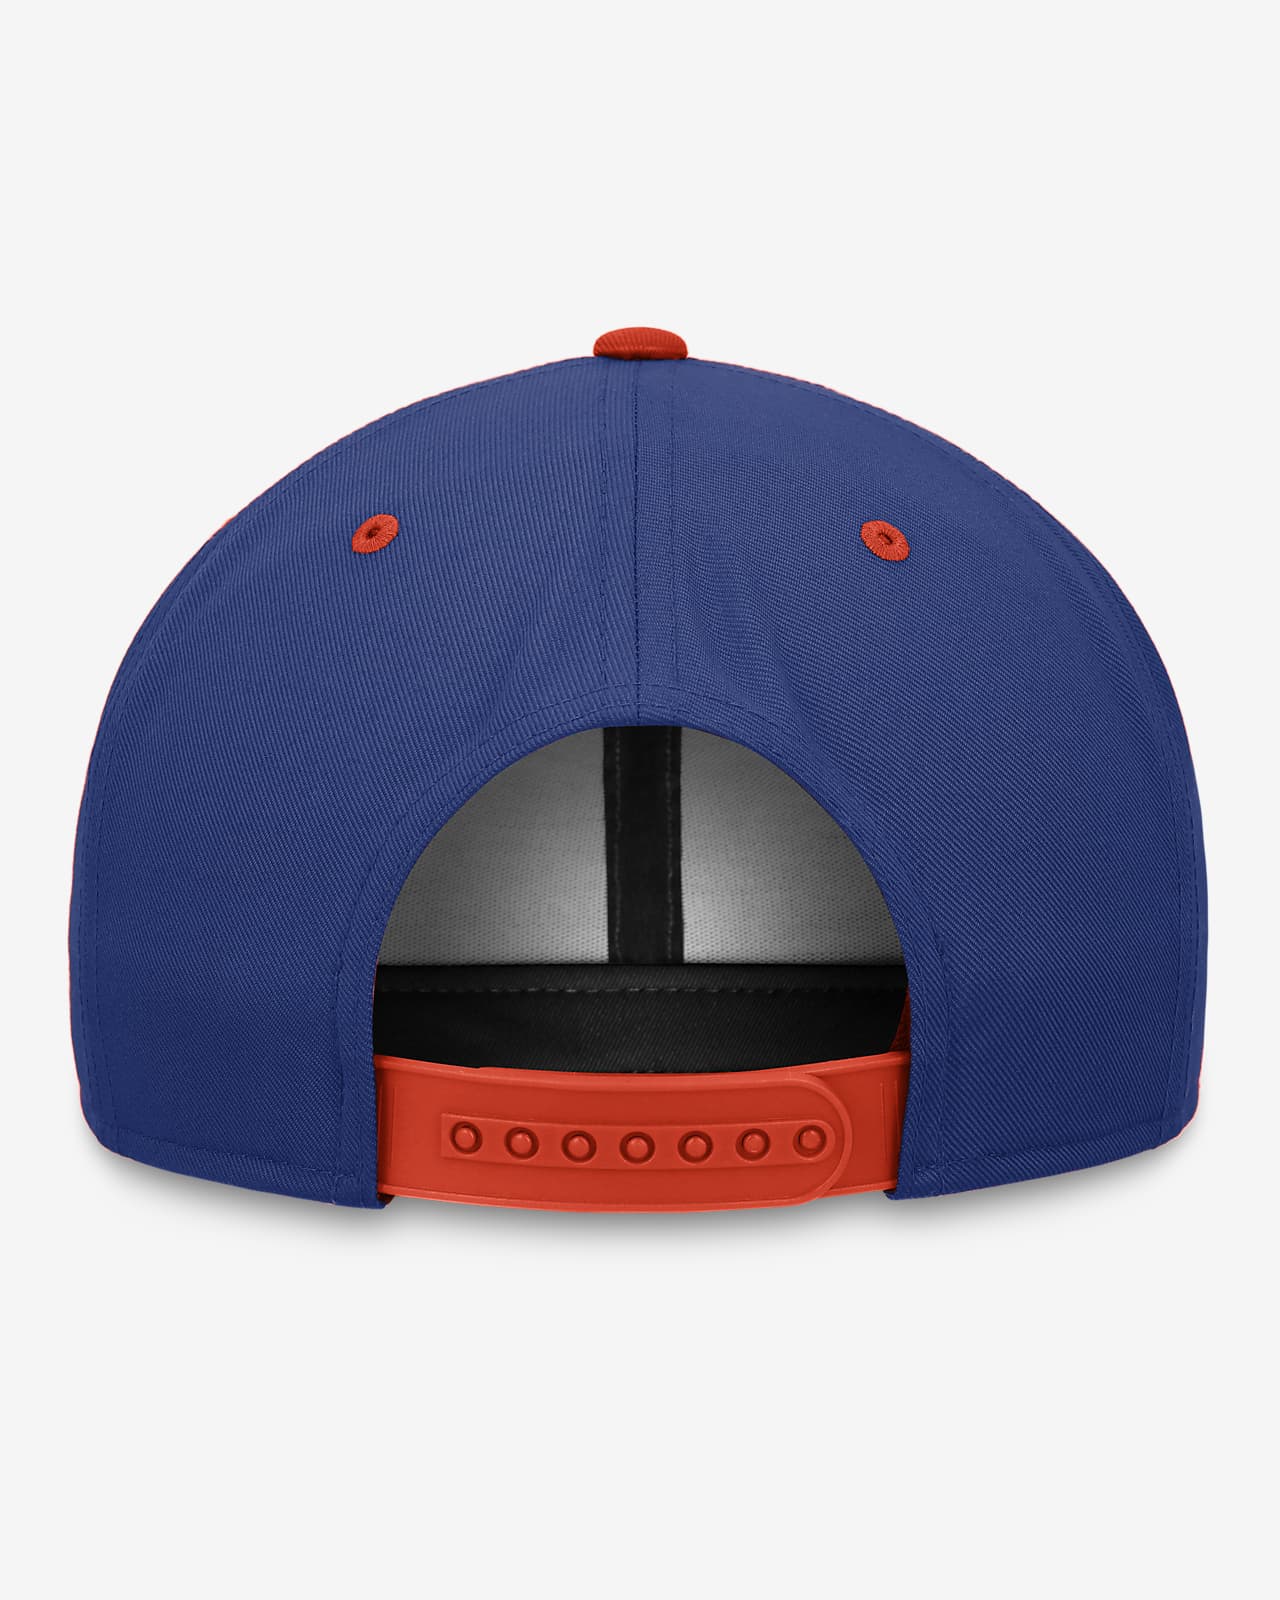 New York Mets Pro Cooperstown Men's Nike MLB Adjustable Hat.